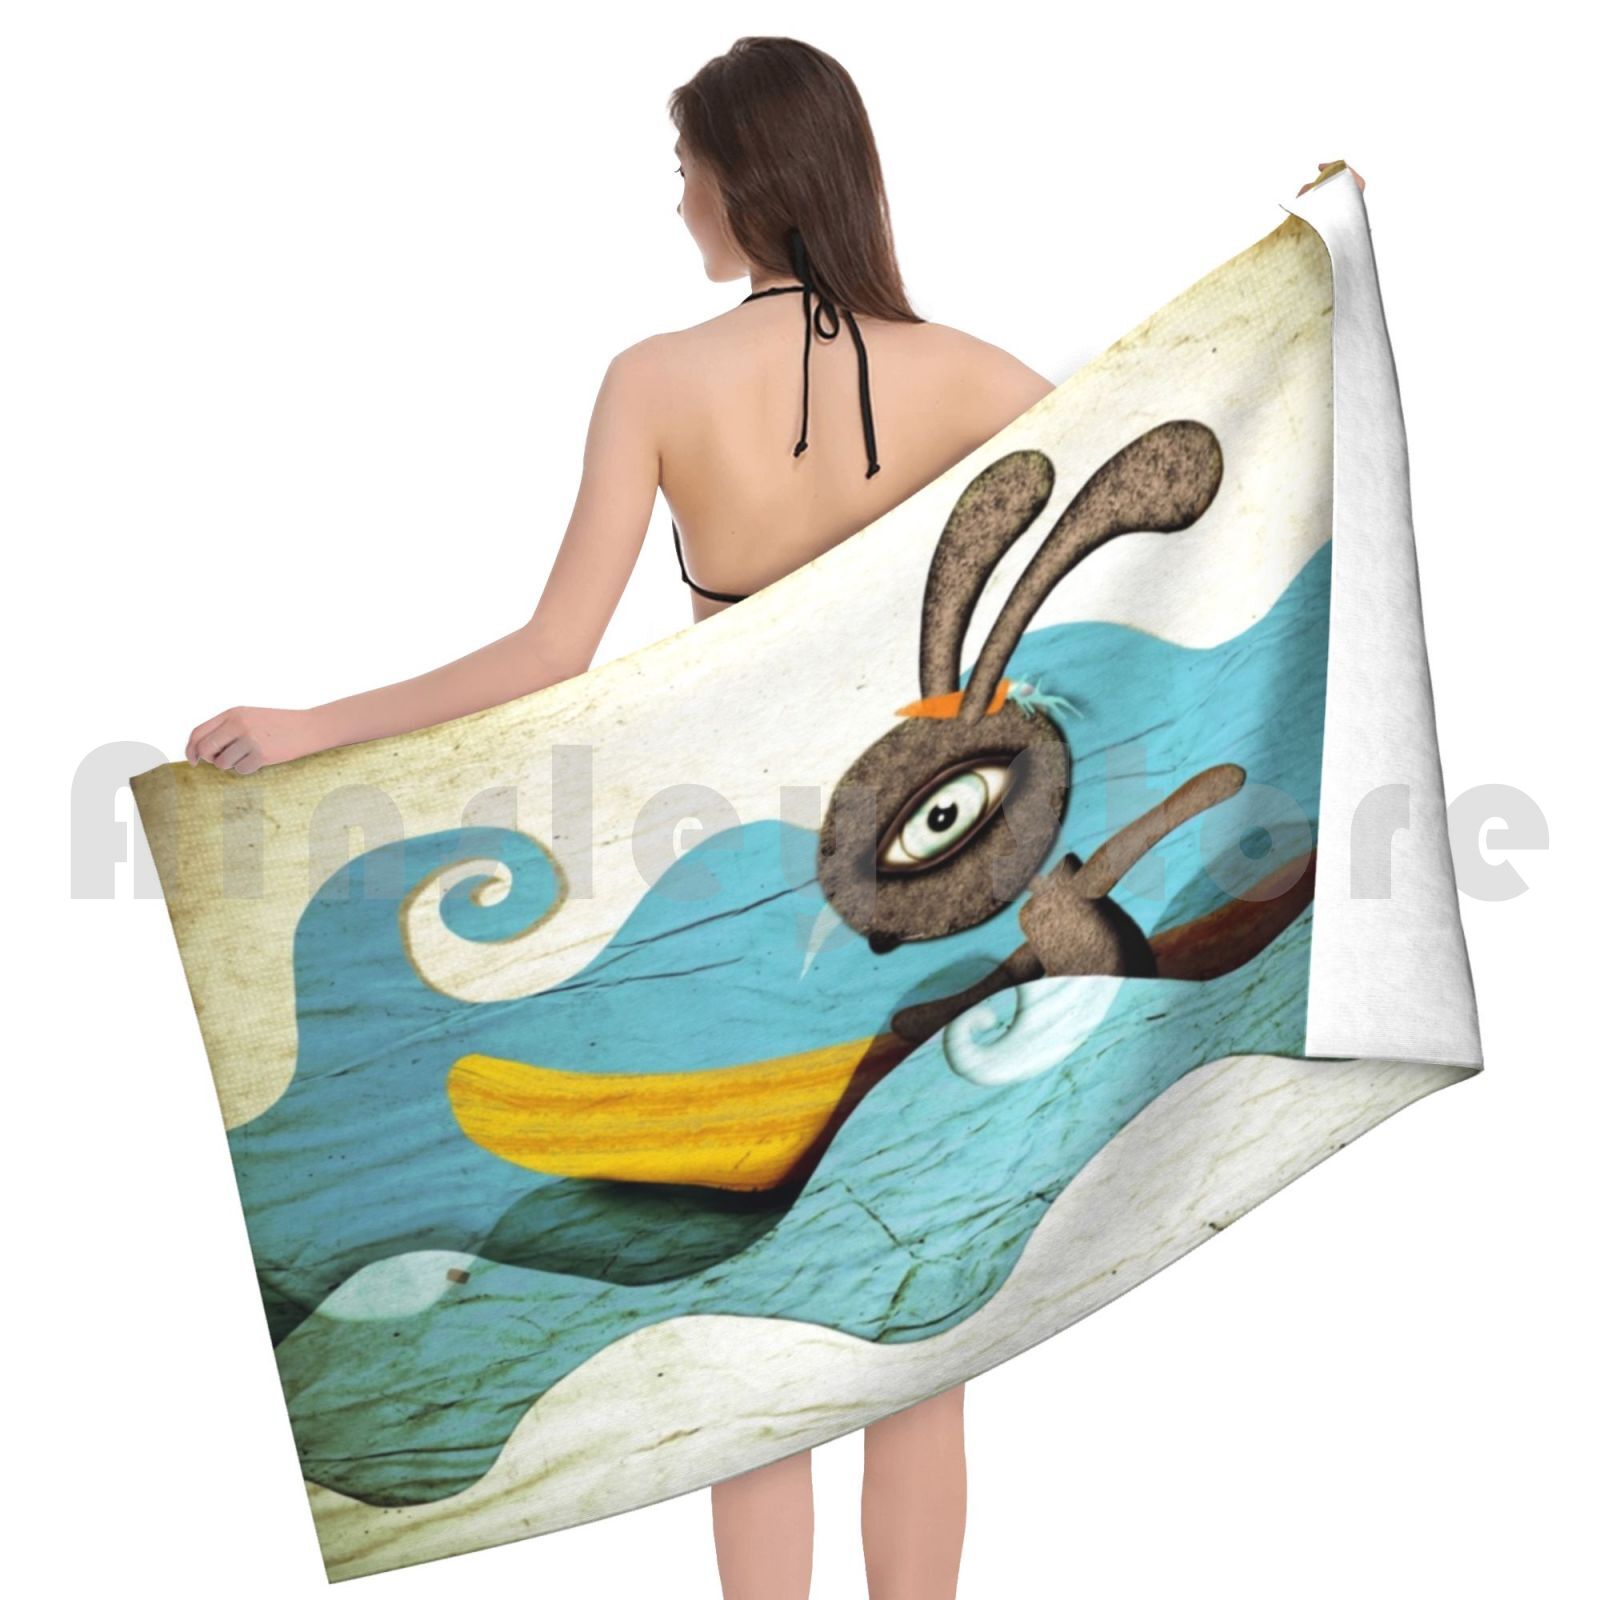 Onde di surf turbini su asciugamano asciugamano asciugamano surf onde surf ondate di carote acqua sportiva bambini s arte